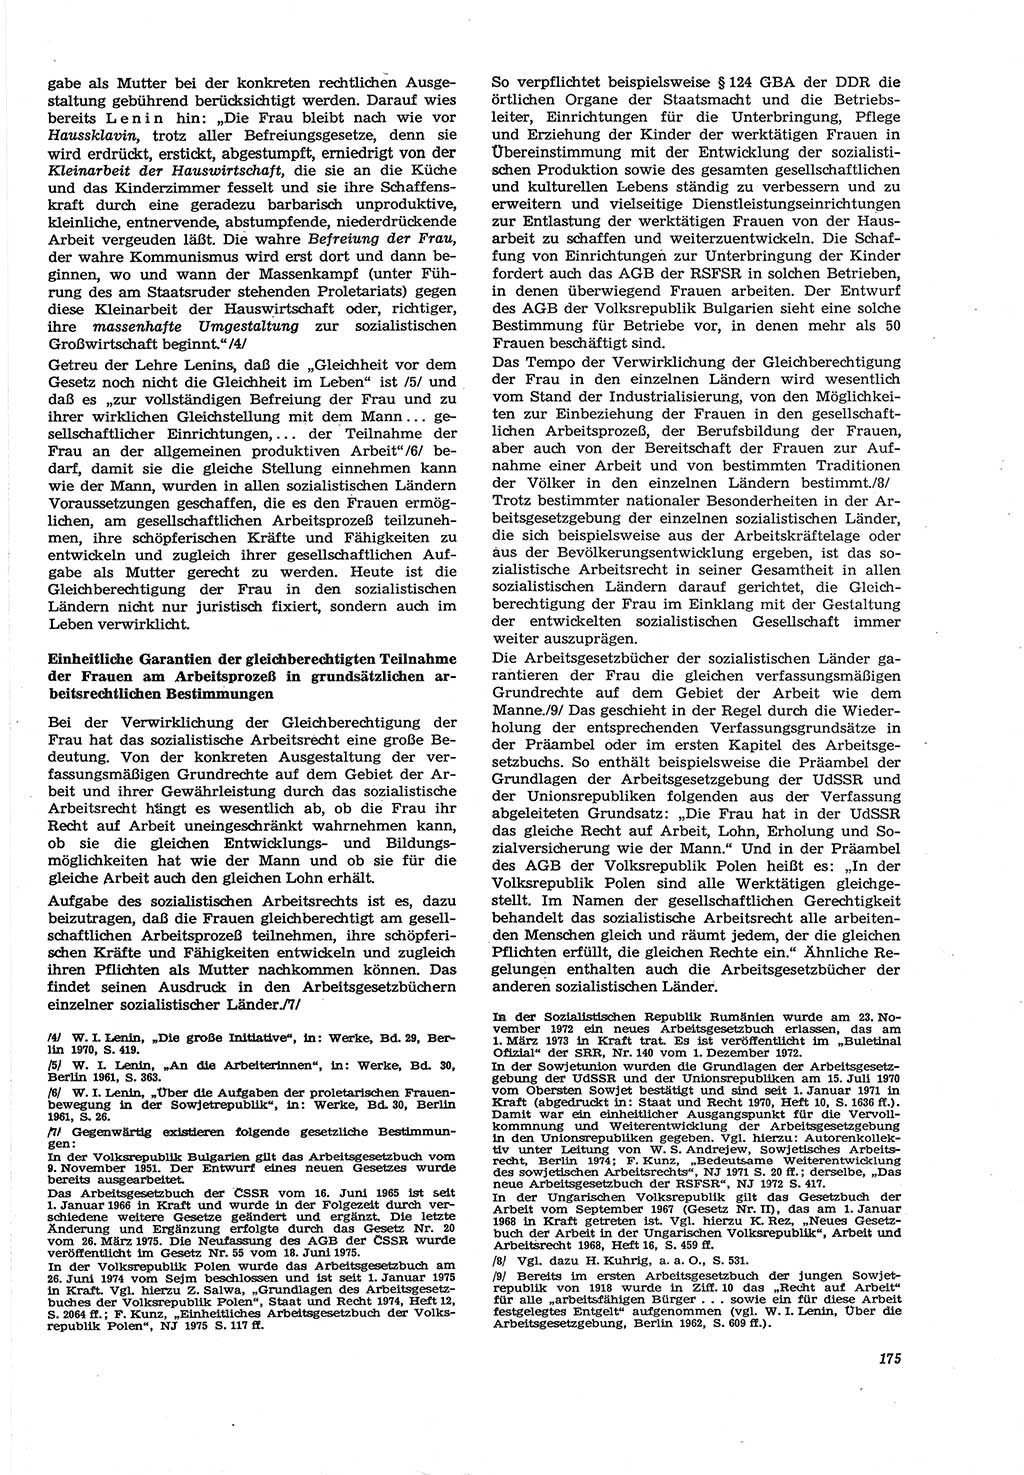 Neue Justiz (NJ), Zeitschrift für Recht und Rechtswissenschaft [Deutsche Demokratische Republik (DDR)], 30. Jahrgang 1976, Seite 175 (NJ DDR 1976, S. 175)